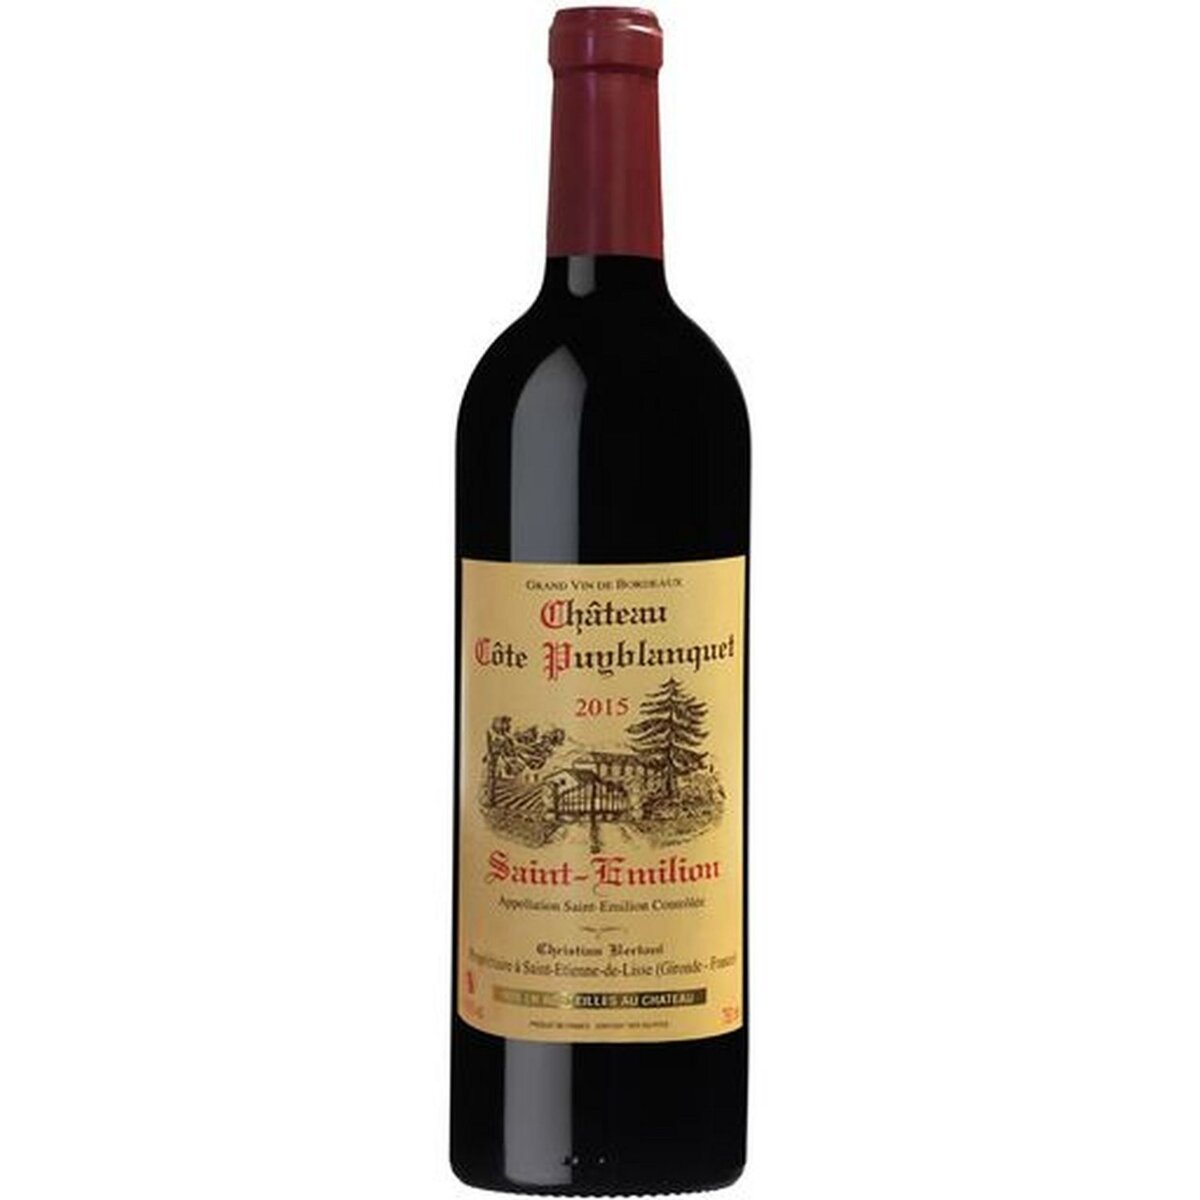 Vin rouge AOP Saint-Emilion Château Côte Puyblanquet 2015 75cl